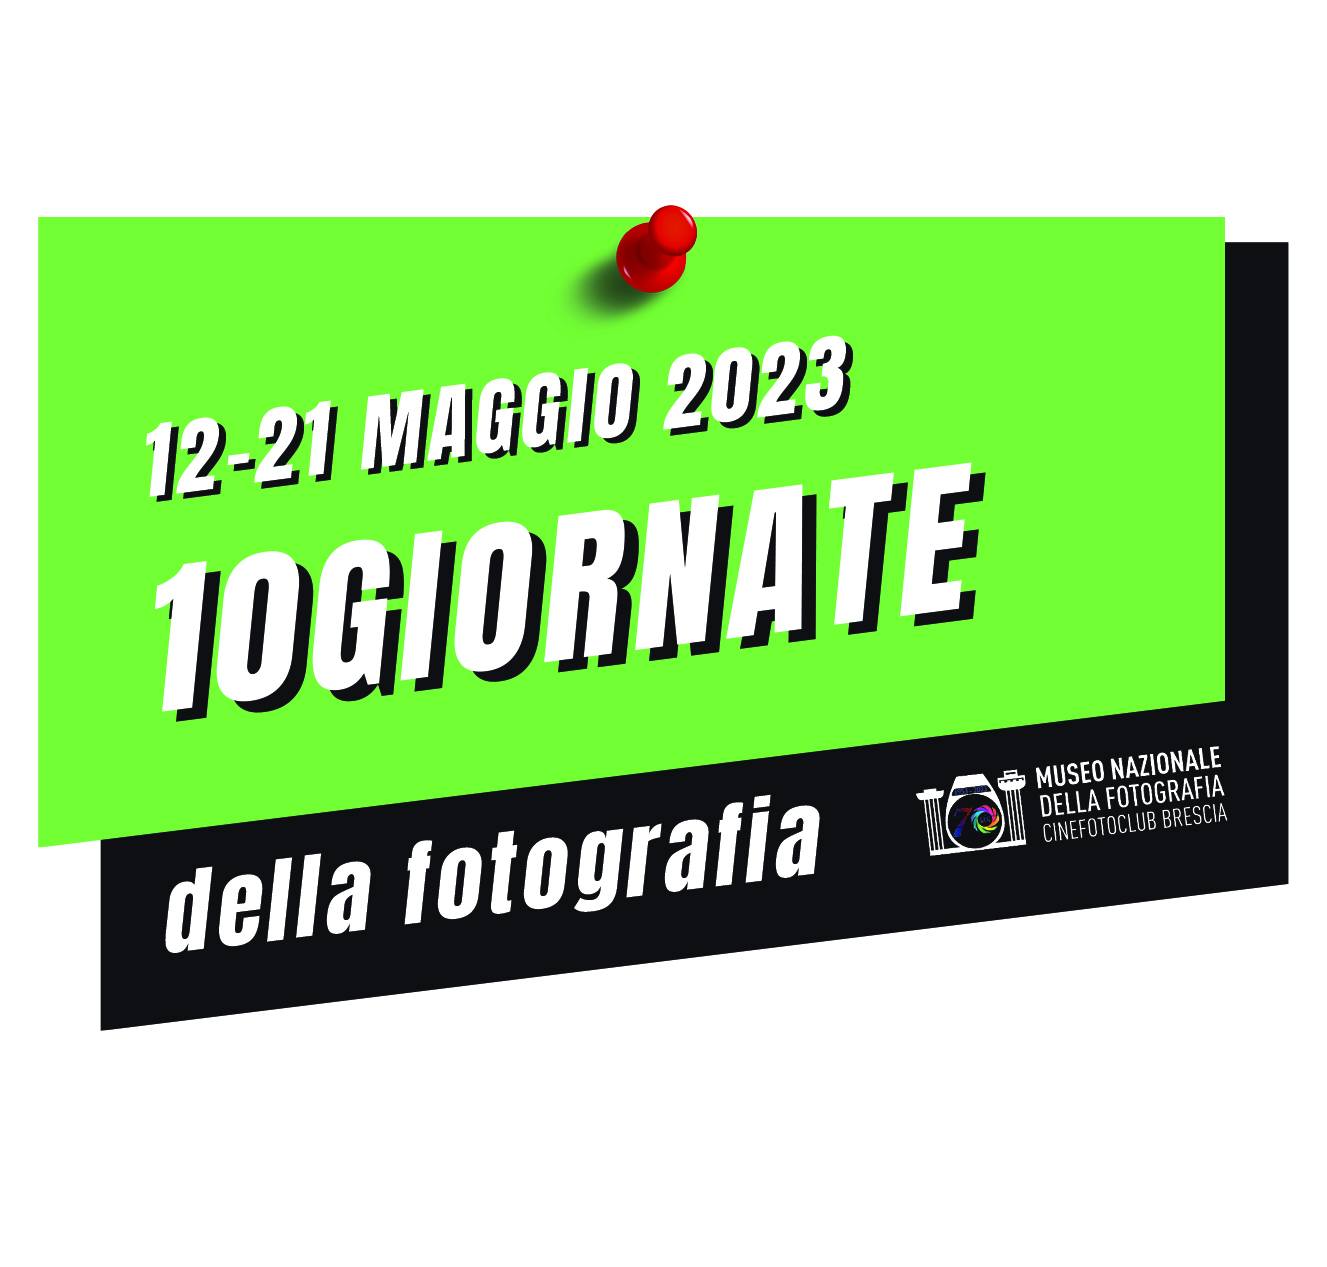 10GIORNATE della fotografia organizzate al Museo della Forografia di Brescia